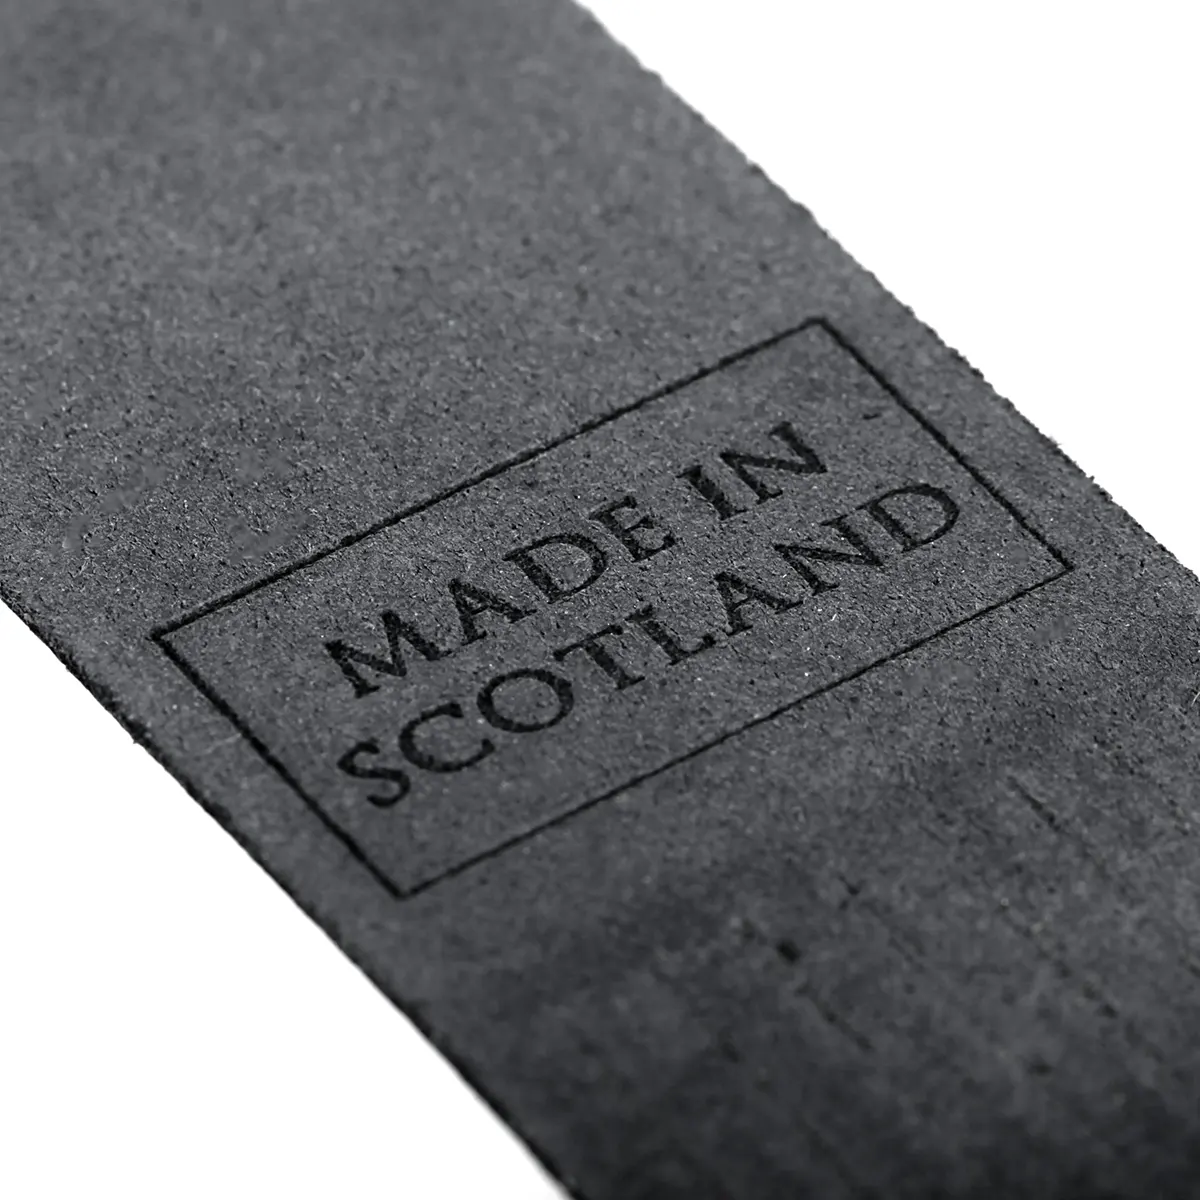 Glasgow - Lesezeichen aus Leder in Schwarz - Made in Scotland